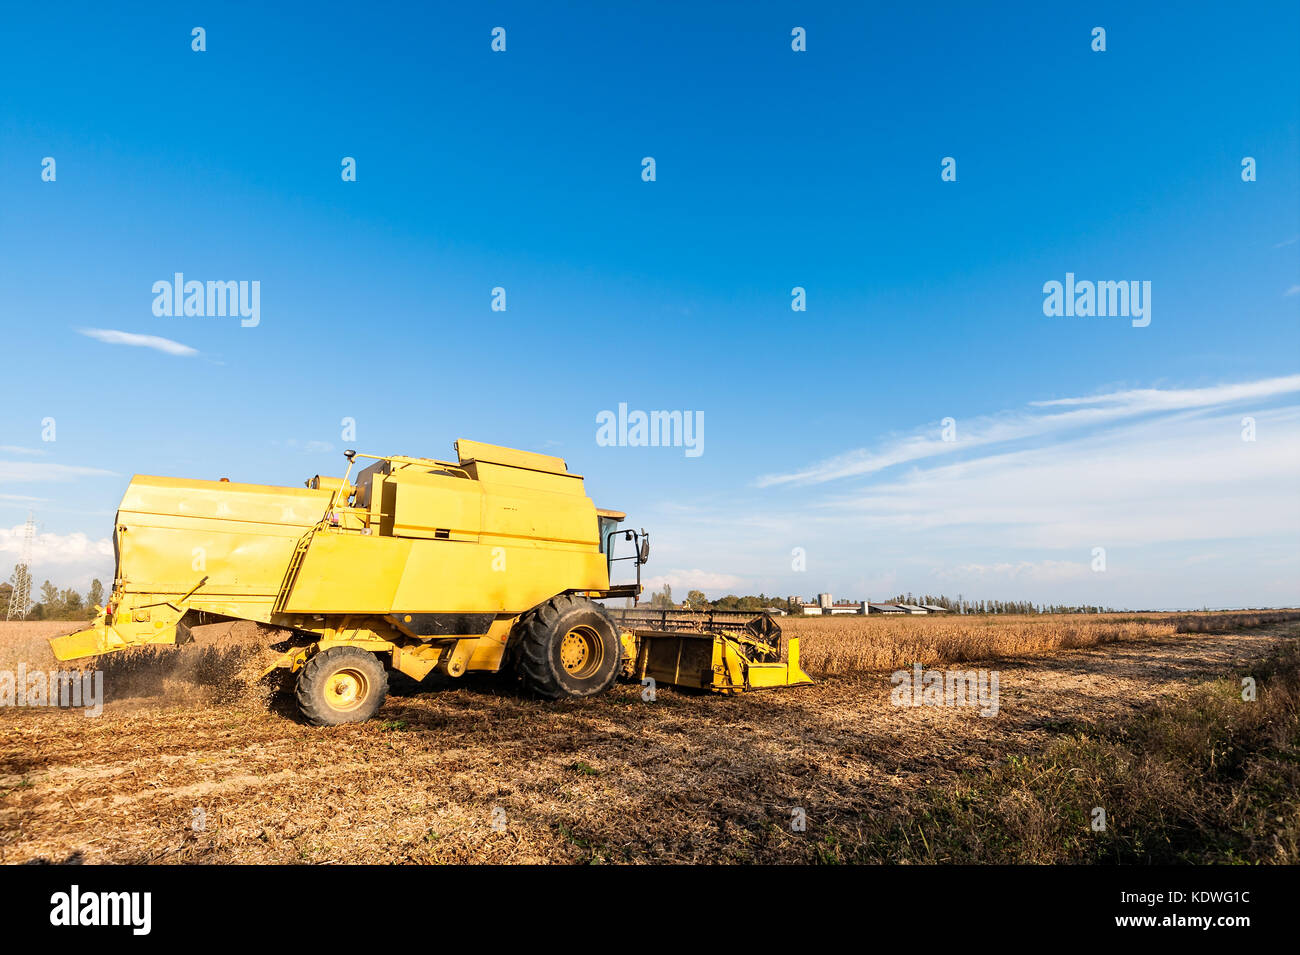 La récolte du champ de soya avec moissonneuse- batteuse jaune.. Banque D'Images